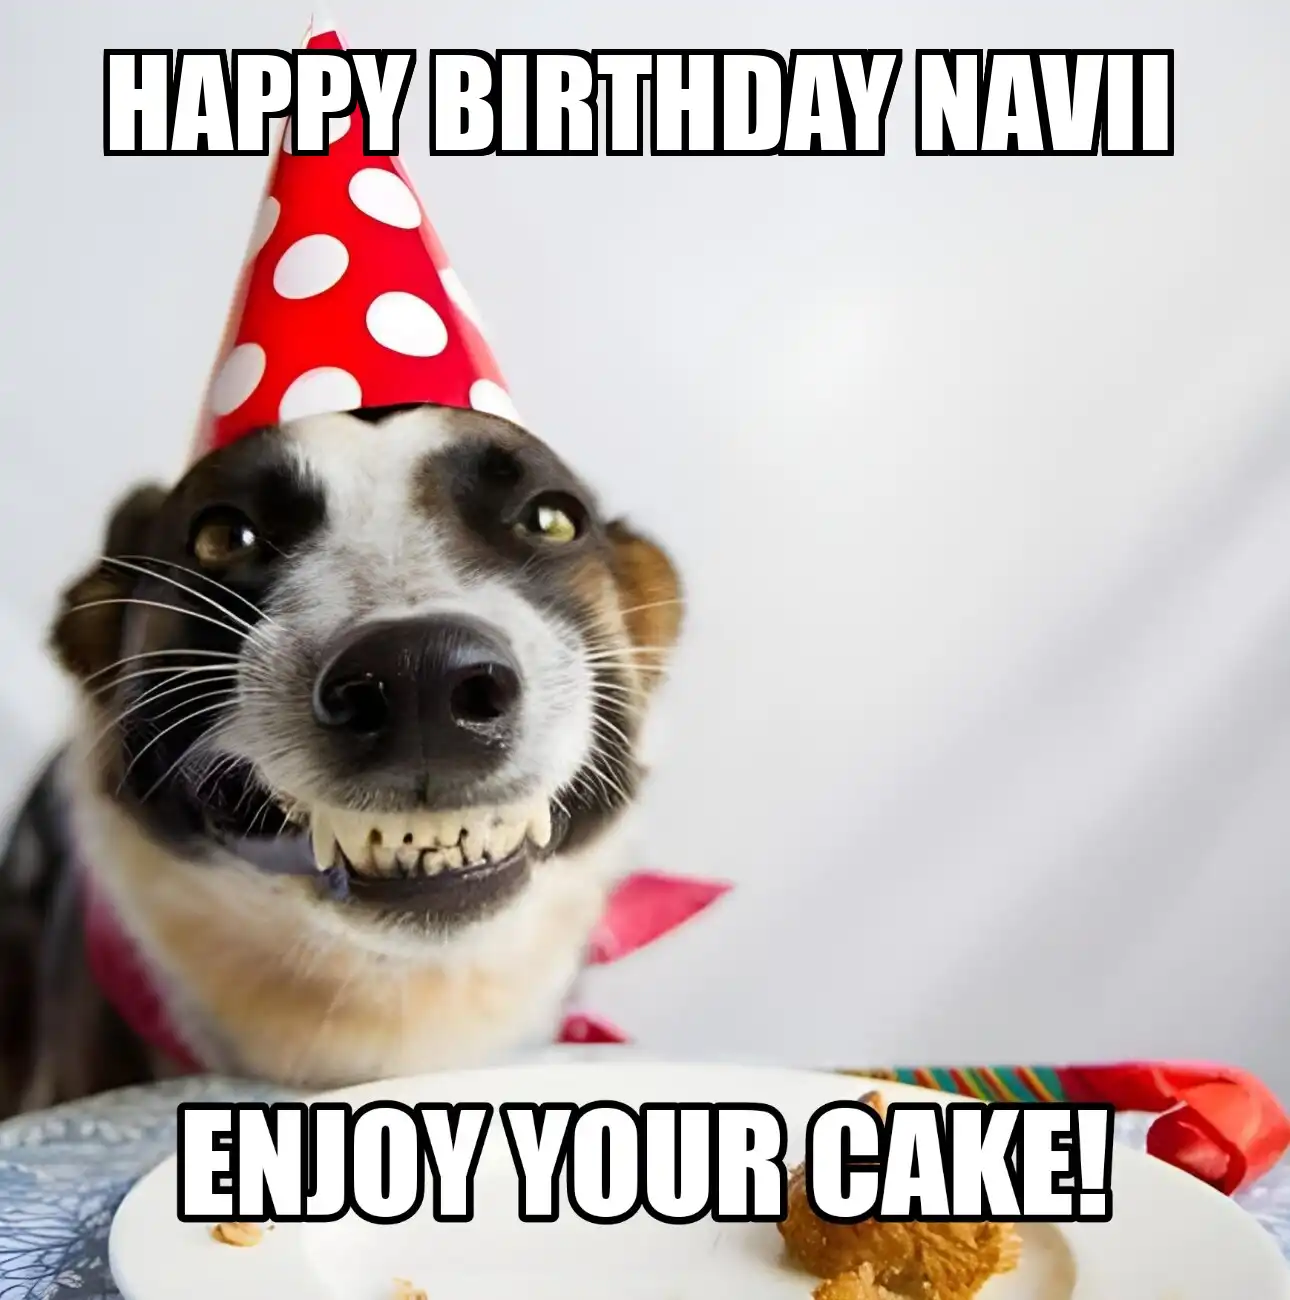 Happy Birthday Navii Enjoy Your Cake Dog Meme